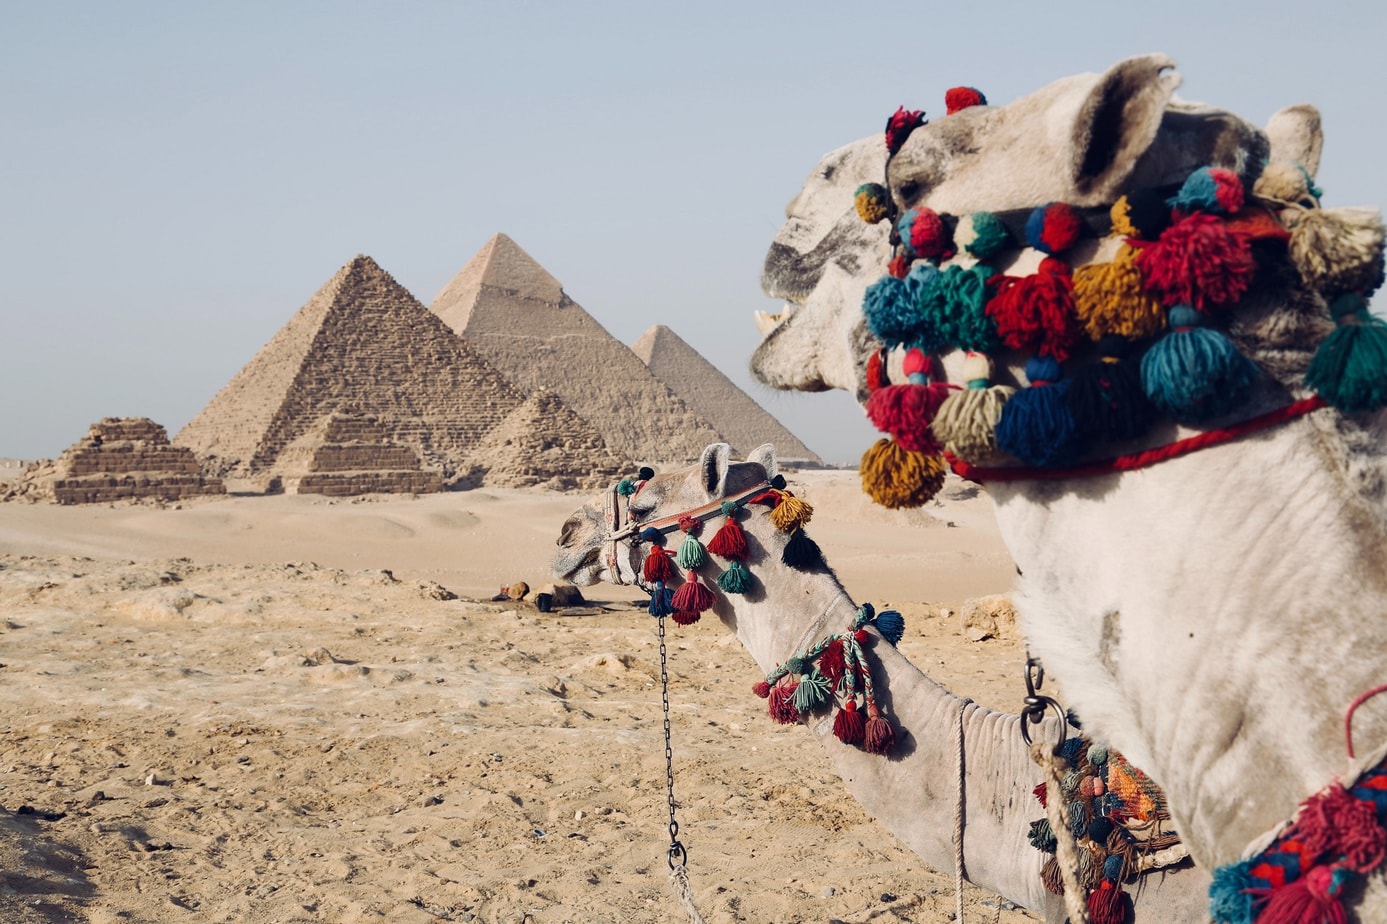 Egipt od lat jest jedną z ulubionych destynacji wakacyjnych Polaków. Co warto zobaczyć, wybierając się na urlop do tego kraju?